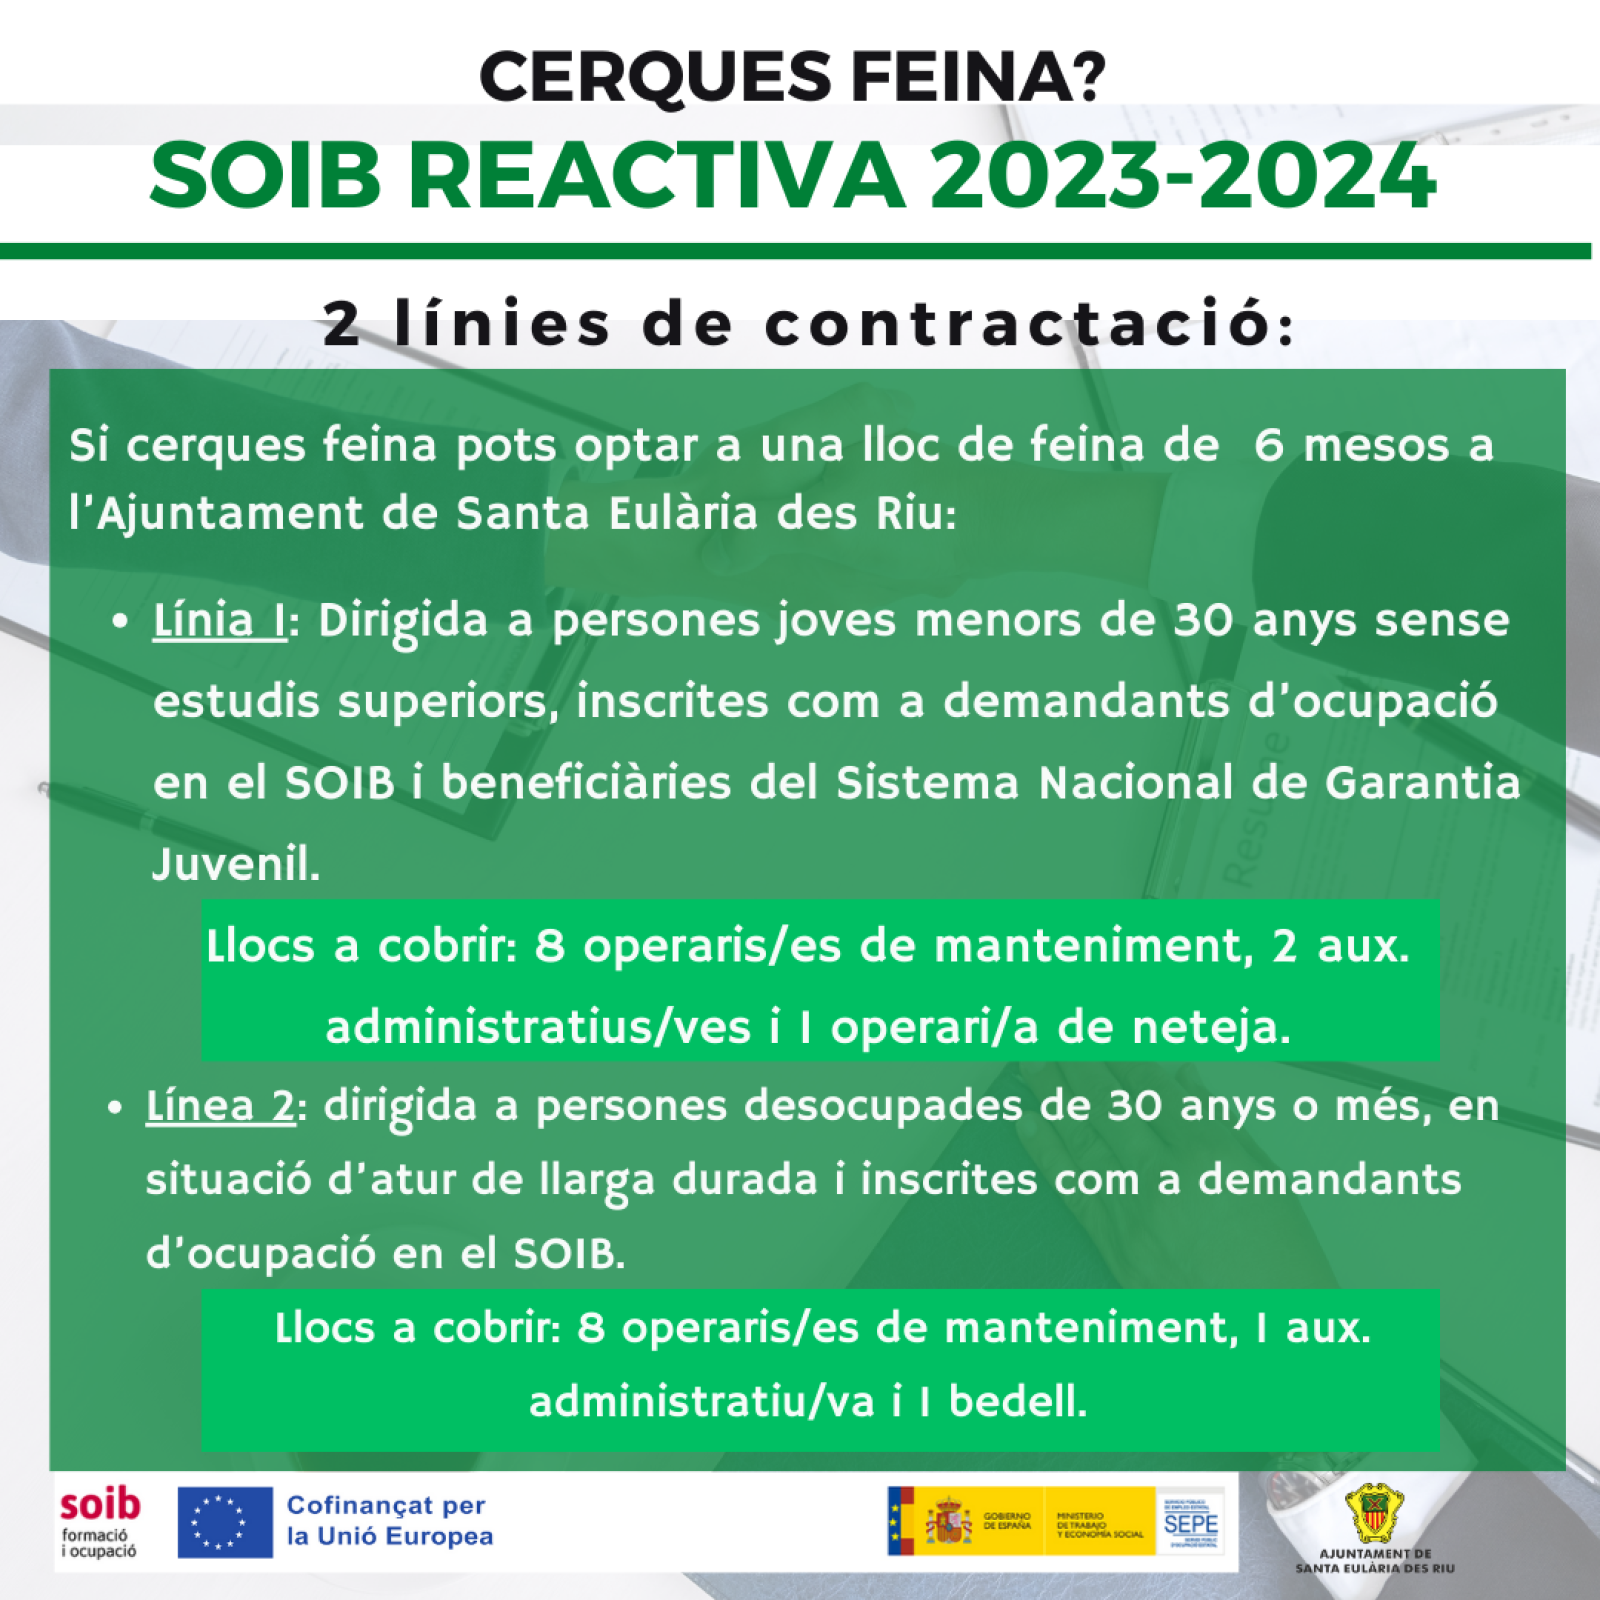 L'Ajuntament de Santa Eulària des Riu i el SOIB inicien el procés per incorporar 21 persones treballadores durant mig any gràcies al programa Reactiva 2023